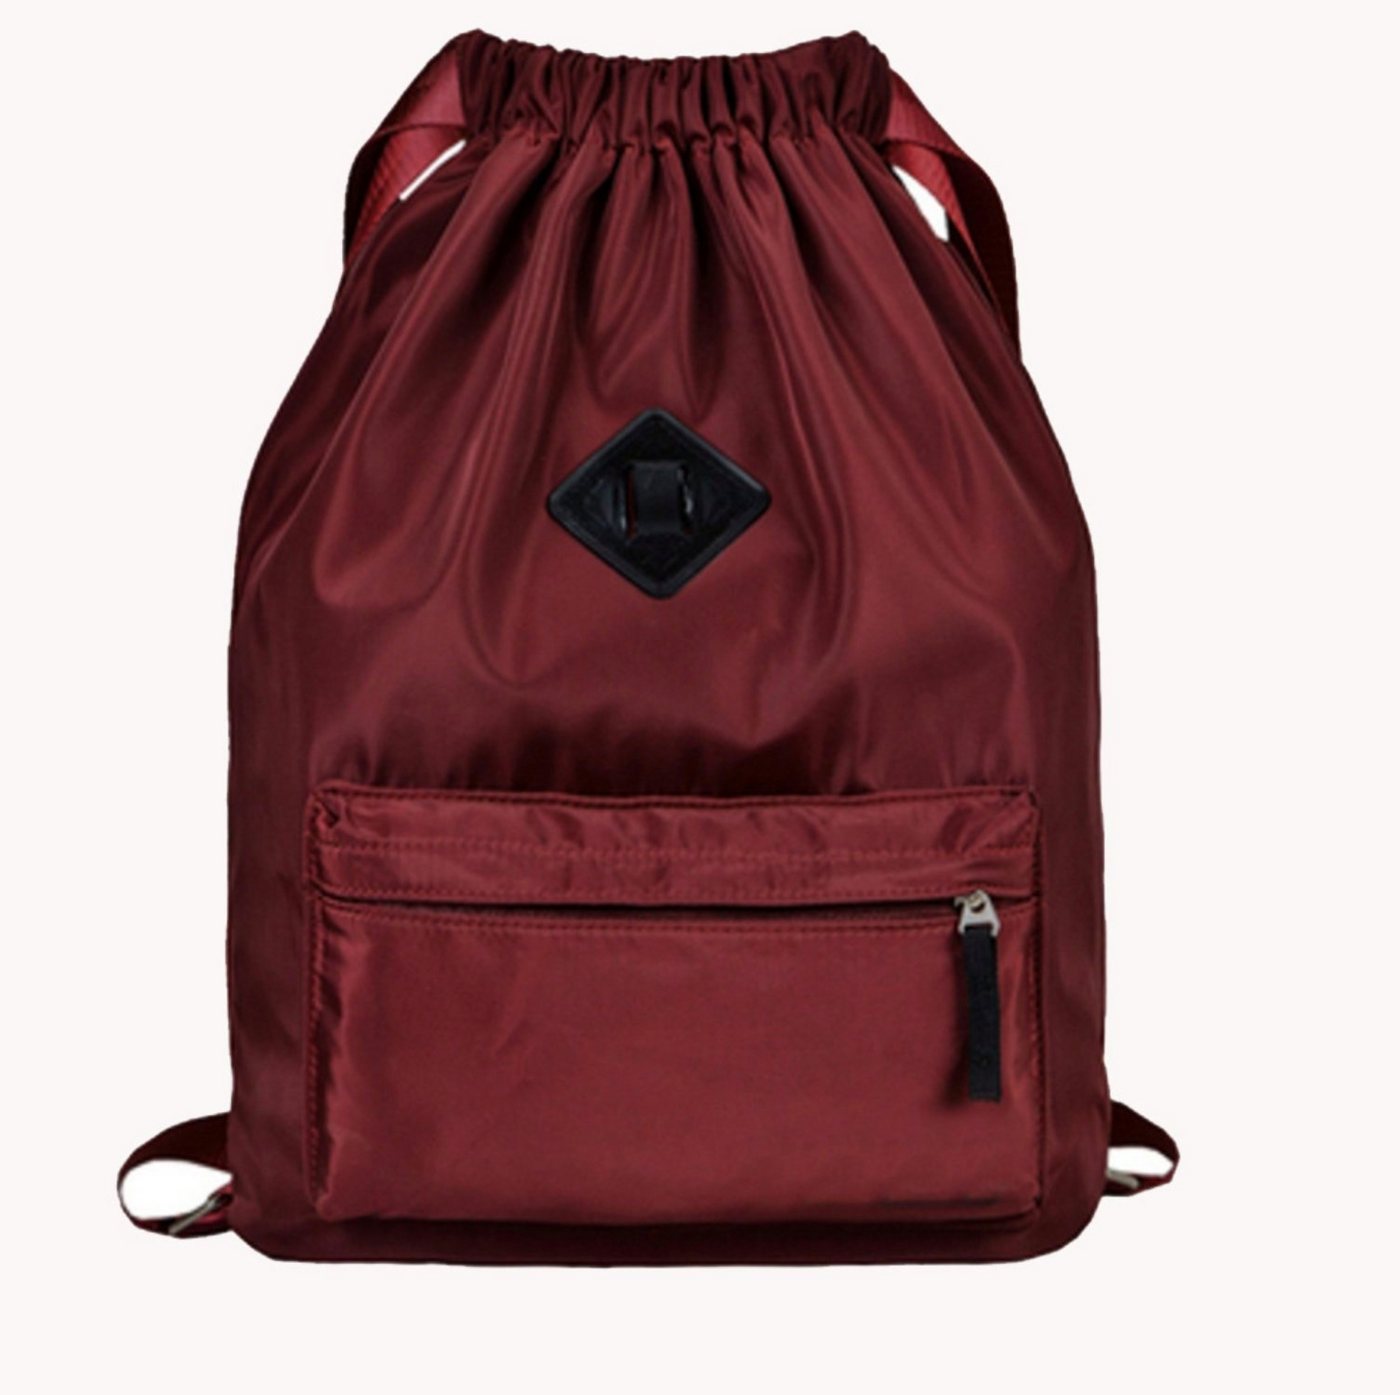 H-basics Rucksack Rucksack Tasche 43*40*15cm mit Kordel zum Zuziehen Turnbeutel mit Kordelzug für Kinder, Teenager oder Erwachsene - Unisex Sporttasche oder Schultasche von H-basics